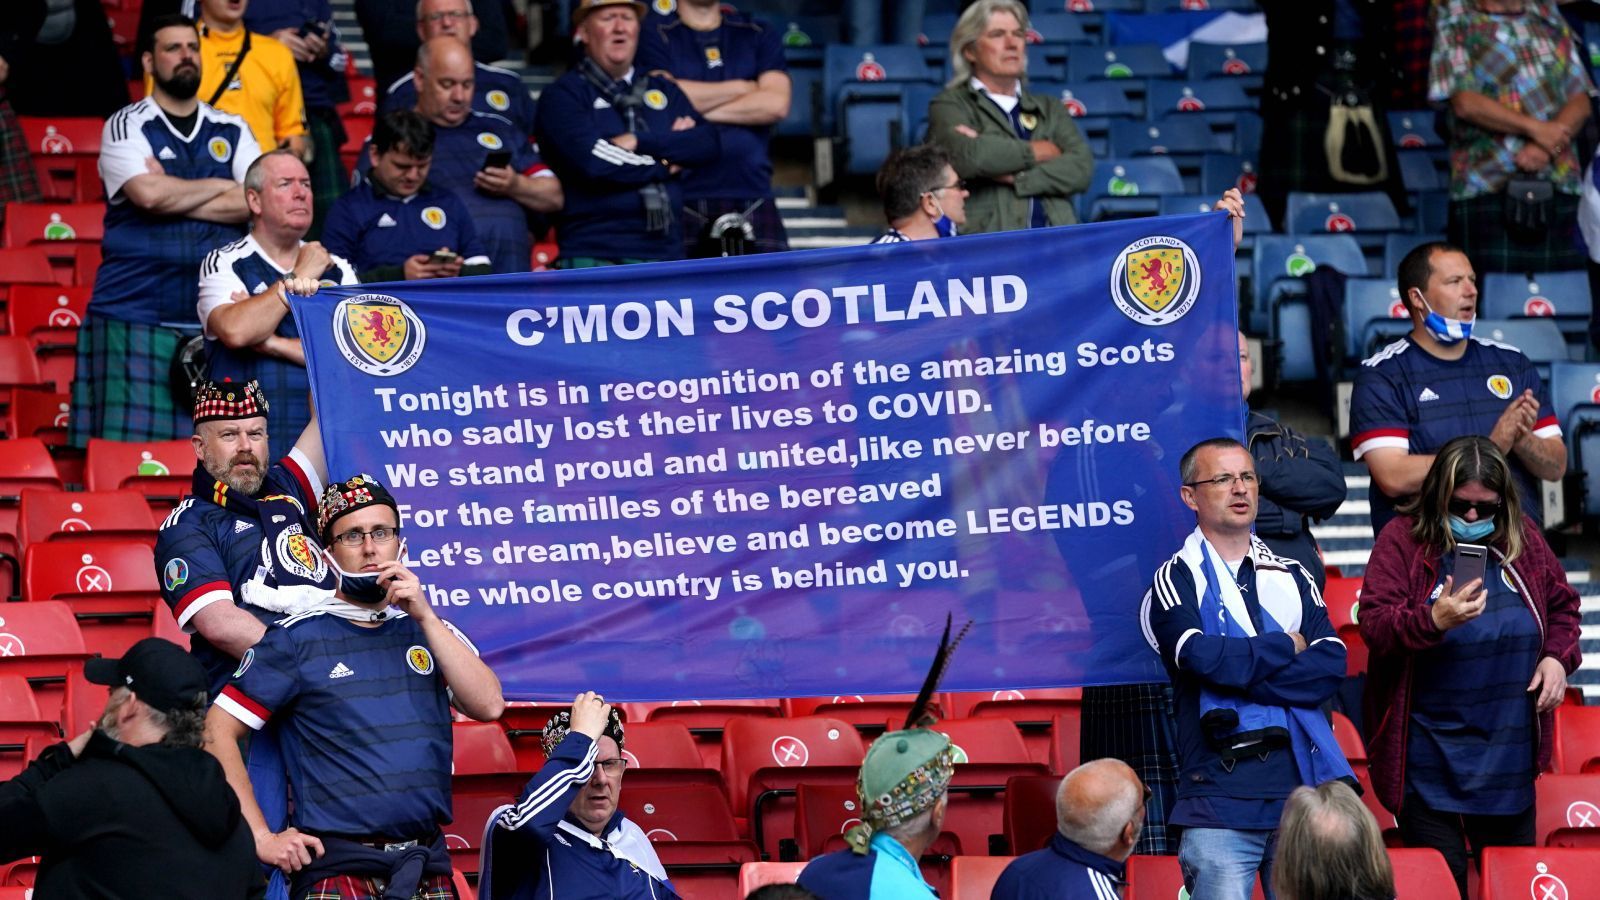 
                <strong>Gedenken an Covid-Opfer</strong><br>
                Dabei gedachten einige Fans vor dem Spiel an die Opfer der Covid-19-Pandemie in Schottland. Sie forderten ihre Spieler auf, zu Helden zu werden. Auch wenn das nicht gelang, eine große und emotionale Geste der Fans.
              